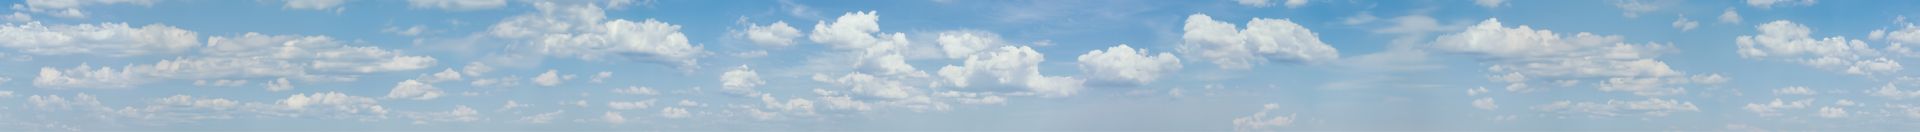 elriwa M4-H55-B - Hintergrundplatte aus PVC-Hartschaum 'Himmel mit Wolken', Höhe 55 cm, Bild B